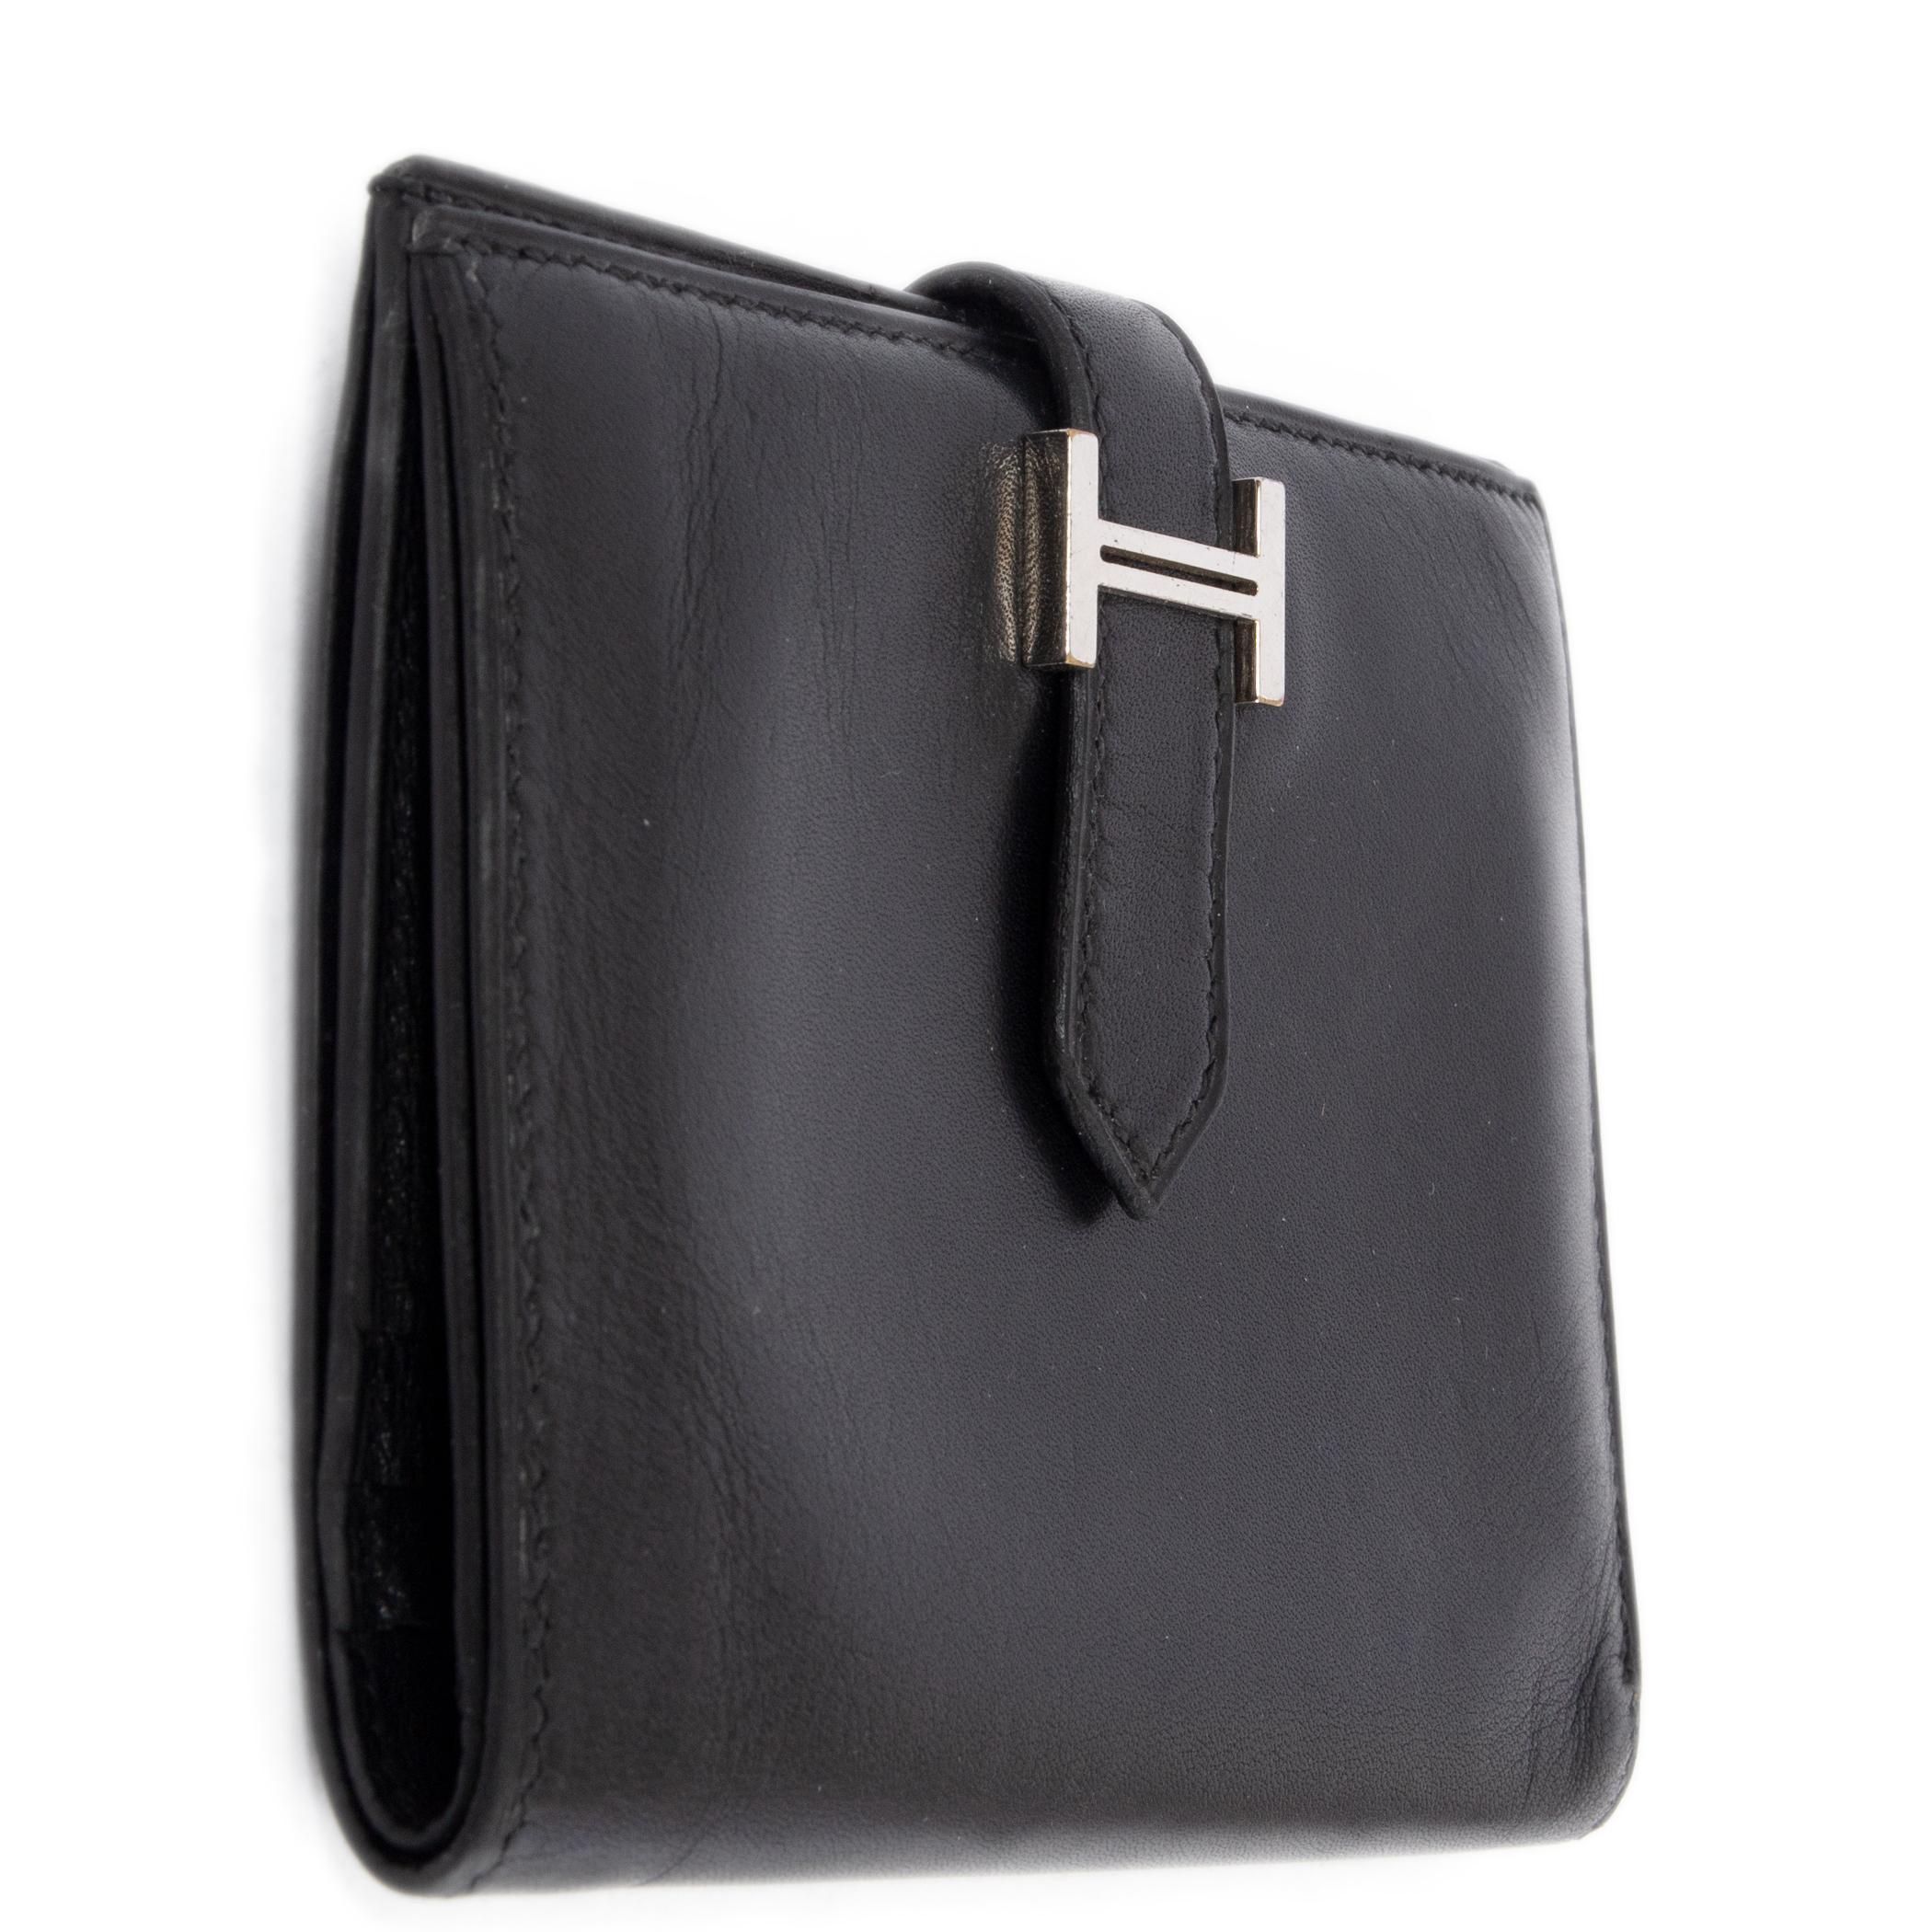 100% authentische Hermès Béarn Portefeuille Compact aus schwarzem Glattleder Miroir und Palladium-Hardware. Öffnet sich zu einem Innenraum mit 4 Kreditkartenfächern, einem Münzfach mit Reißverschluss und 2 flachen offenen Taschen. Wurde oft getragen